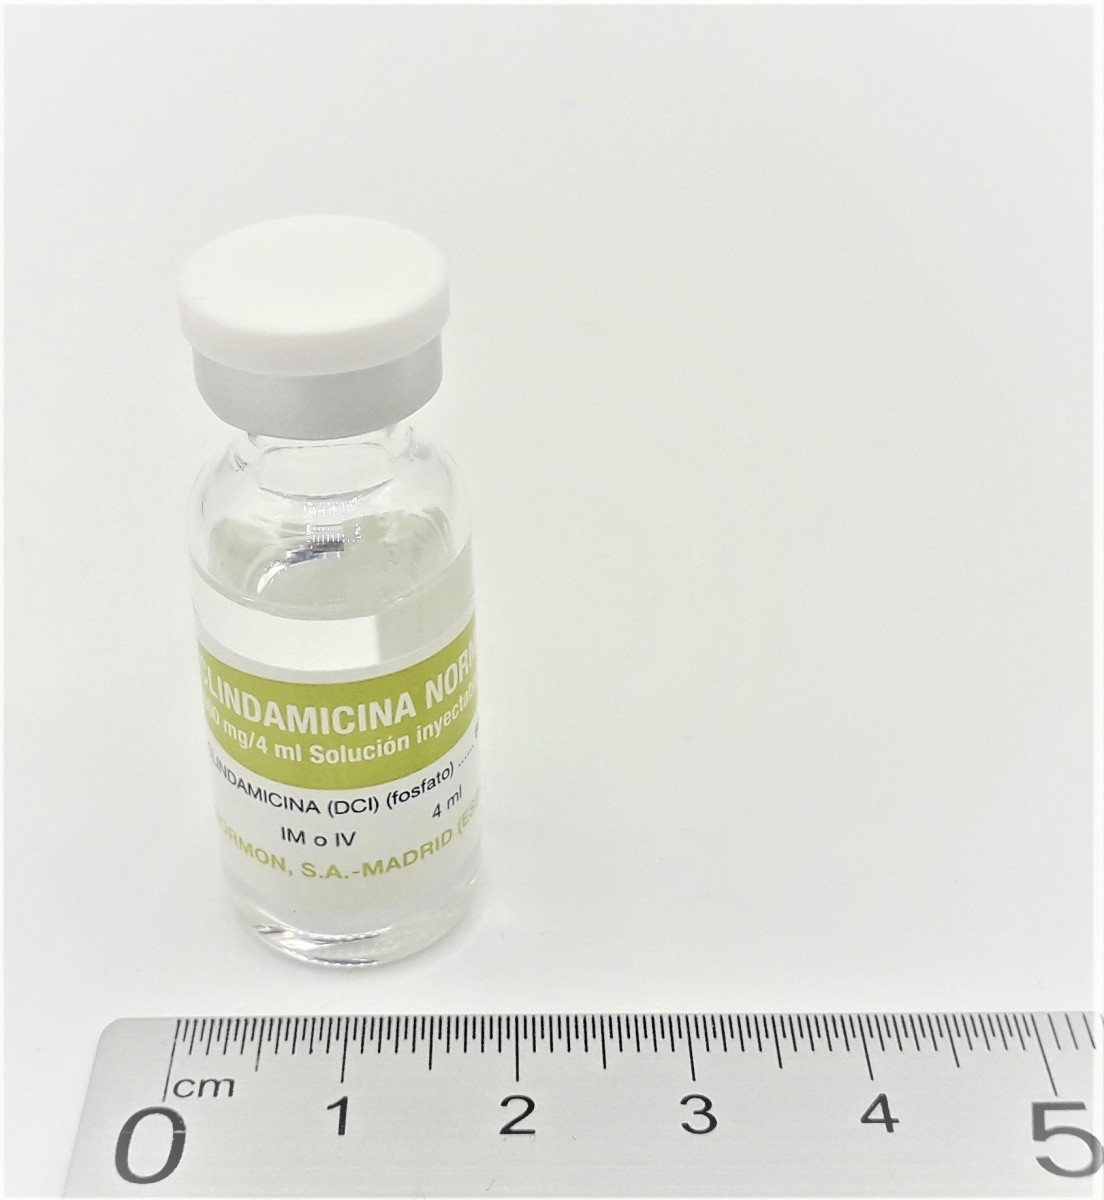 CLINDAMICINA NORMON 600 mg/4 ml SOLUCION INYECTABLE EFG , 100 viales de 4 ml fotografía de la forma farmacéutica.